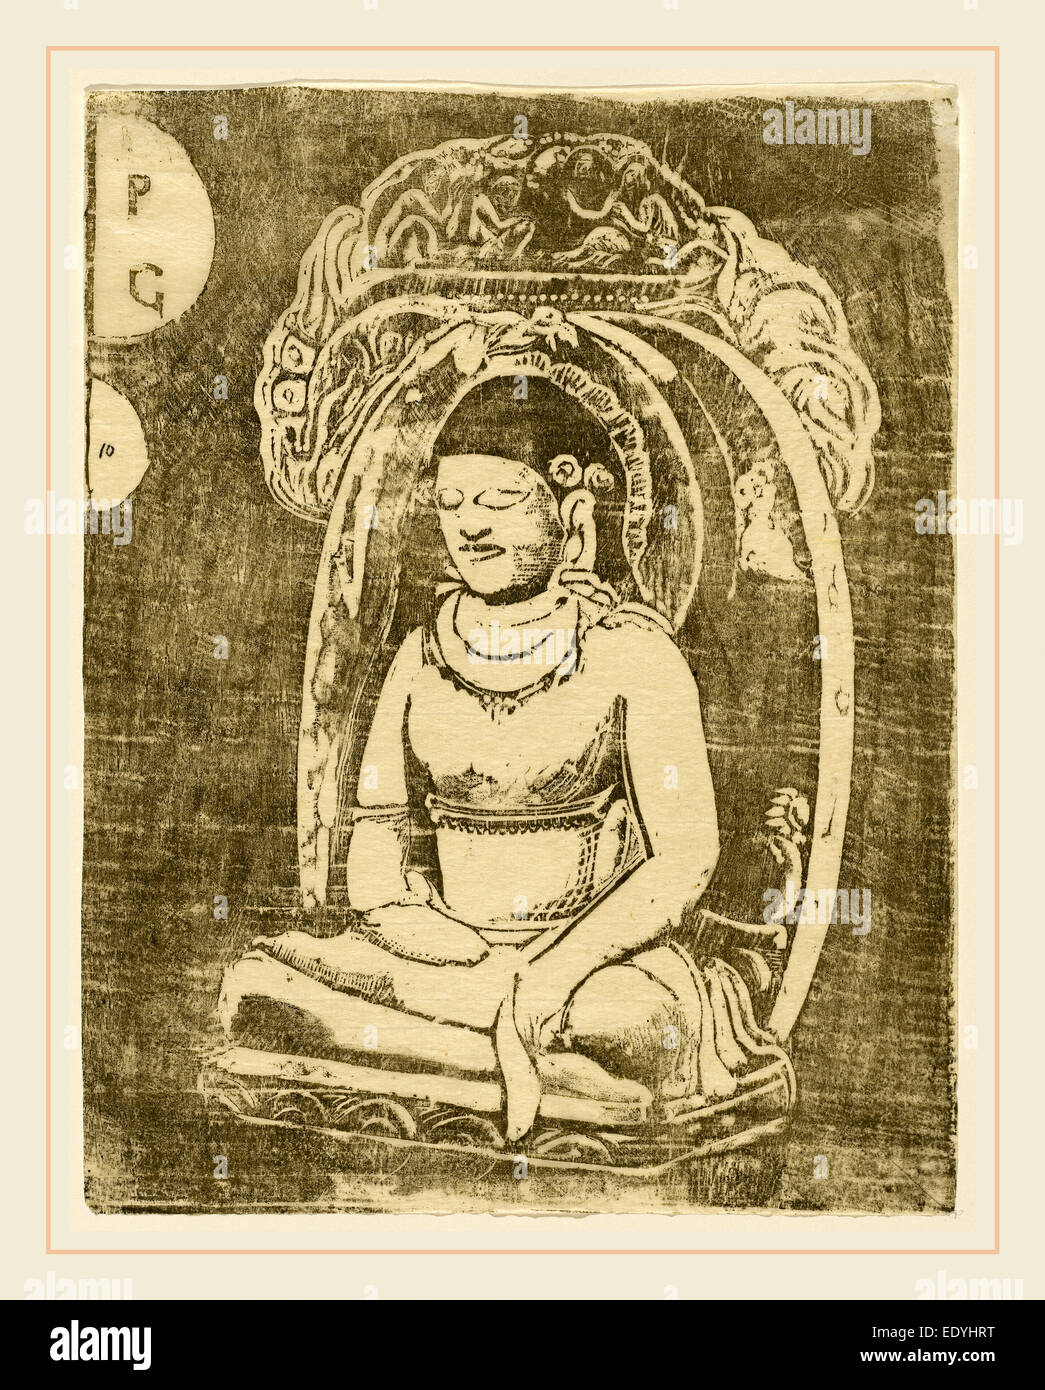 Paul Gauguin, français (1848-1903), Bouddha (Bouddha), en 1895 ou après, gravure sur bois en brun-noir sur papier japon Banque D'Images